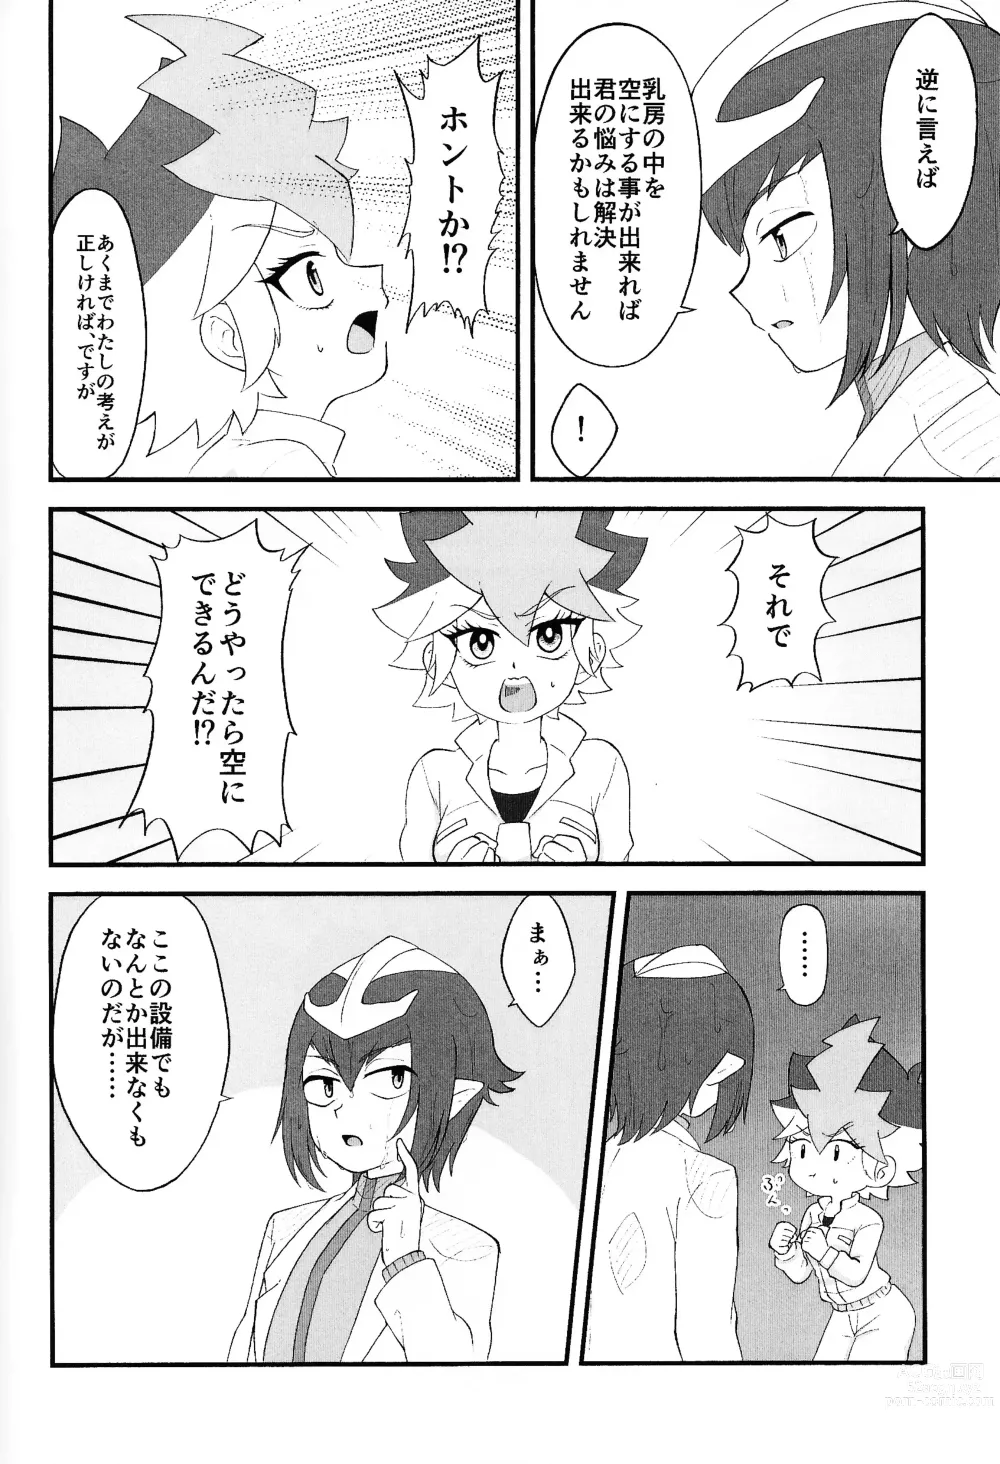 Page 9 of doujinshi Pandoranohako ka kindan no kajitsu ka